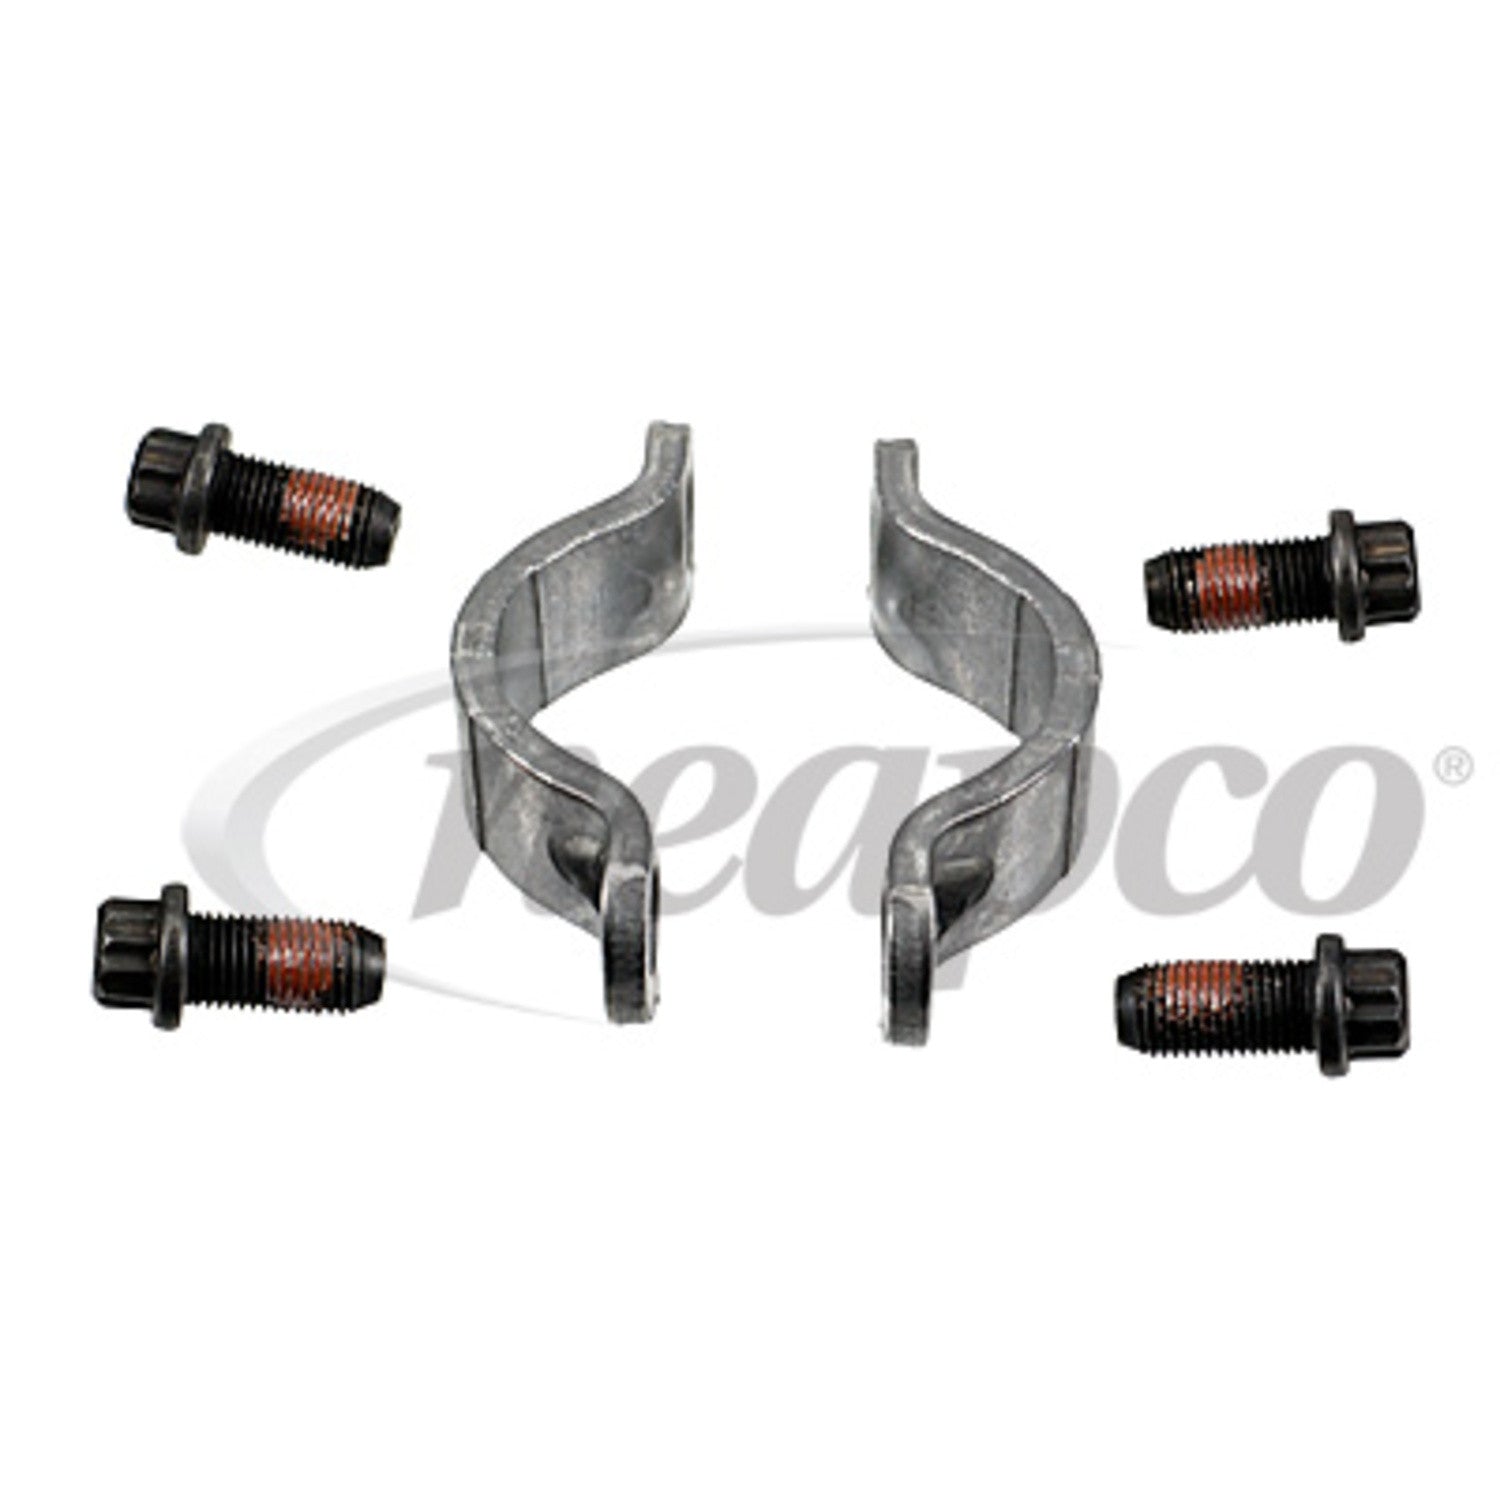 1-0021 Neapco 1480/1550 Series Bearing Strap Kit